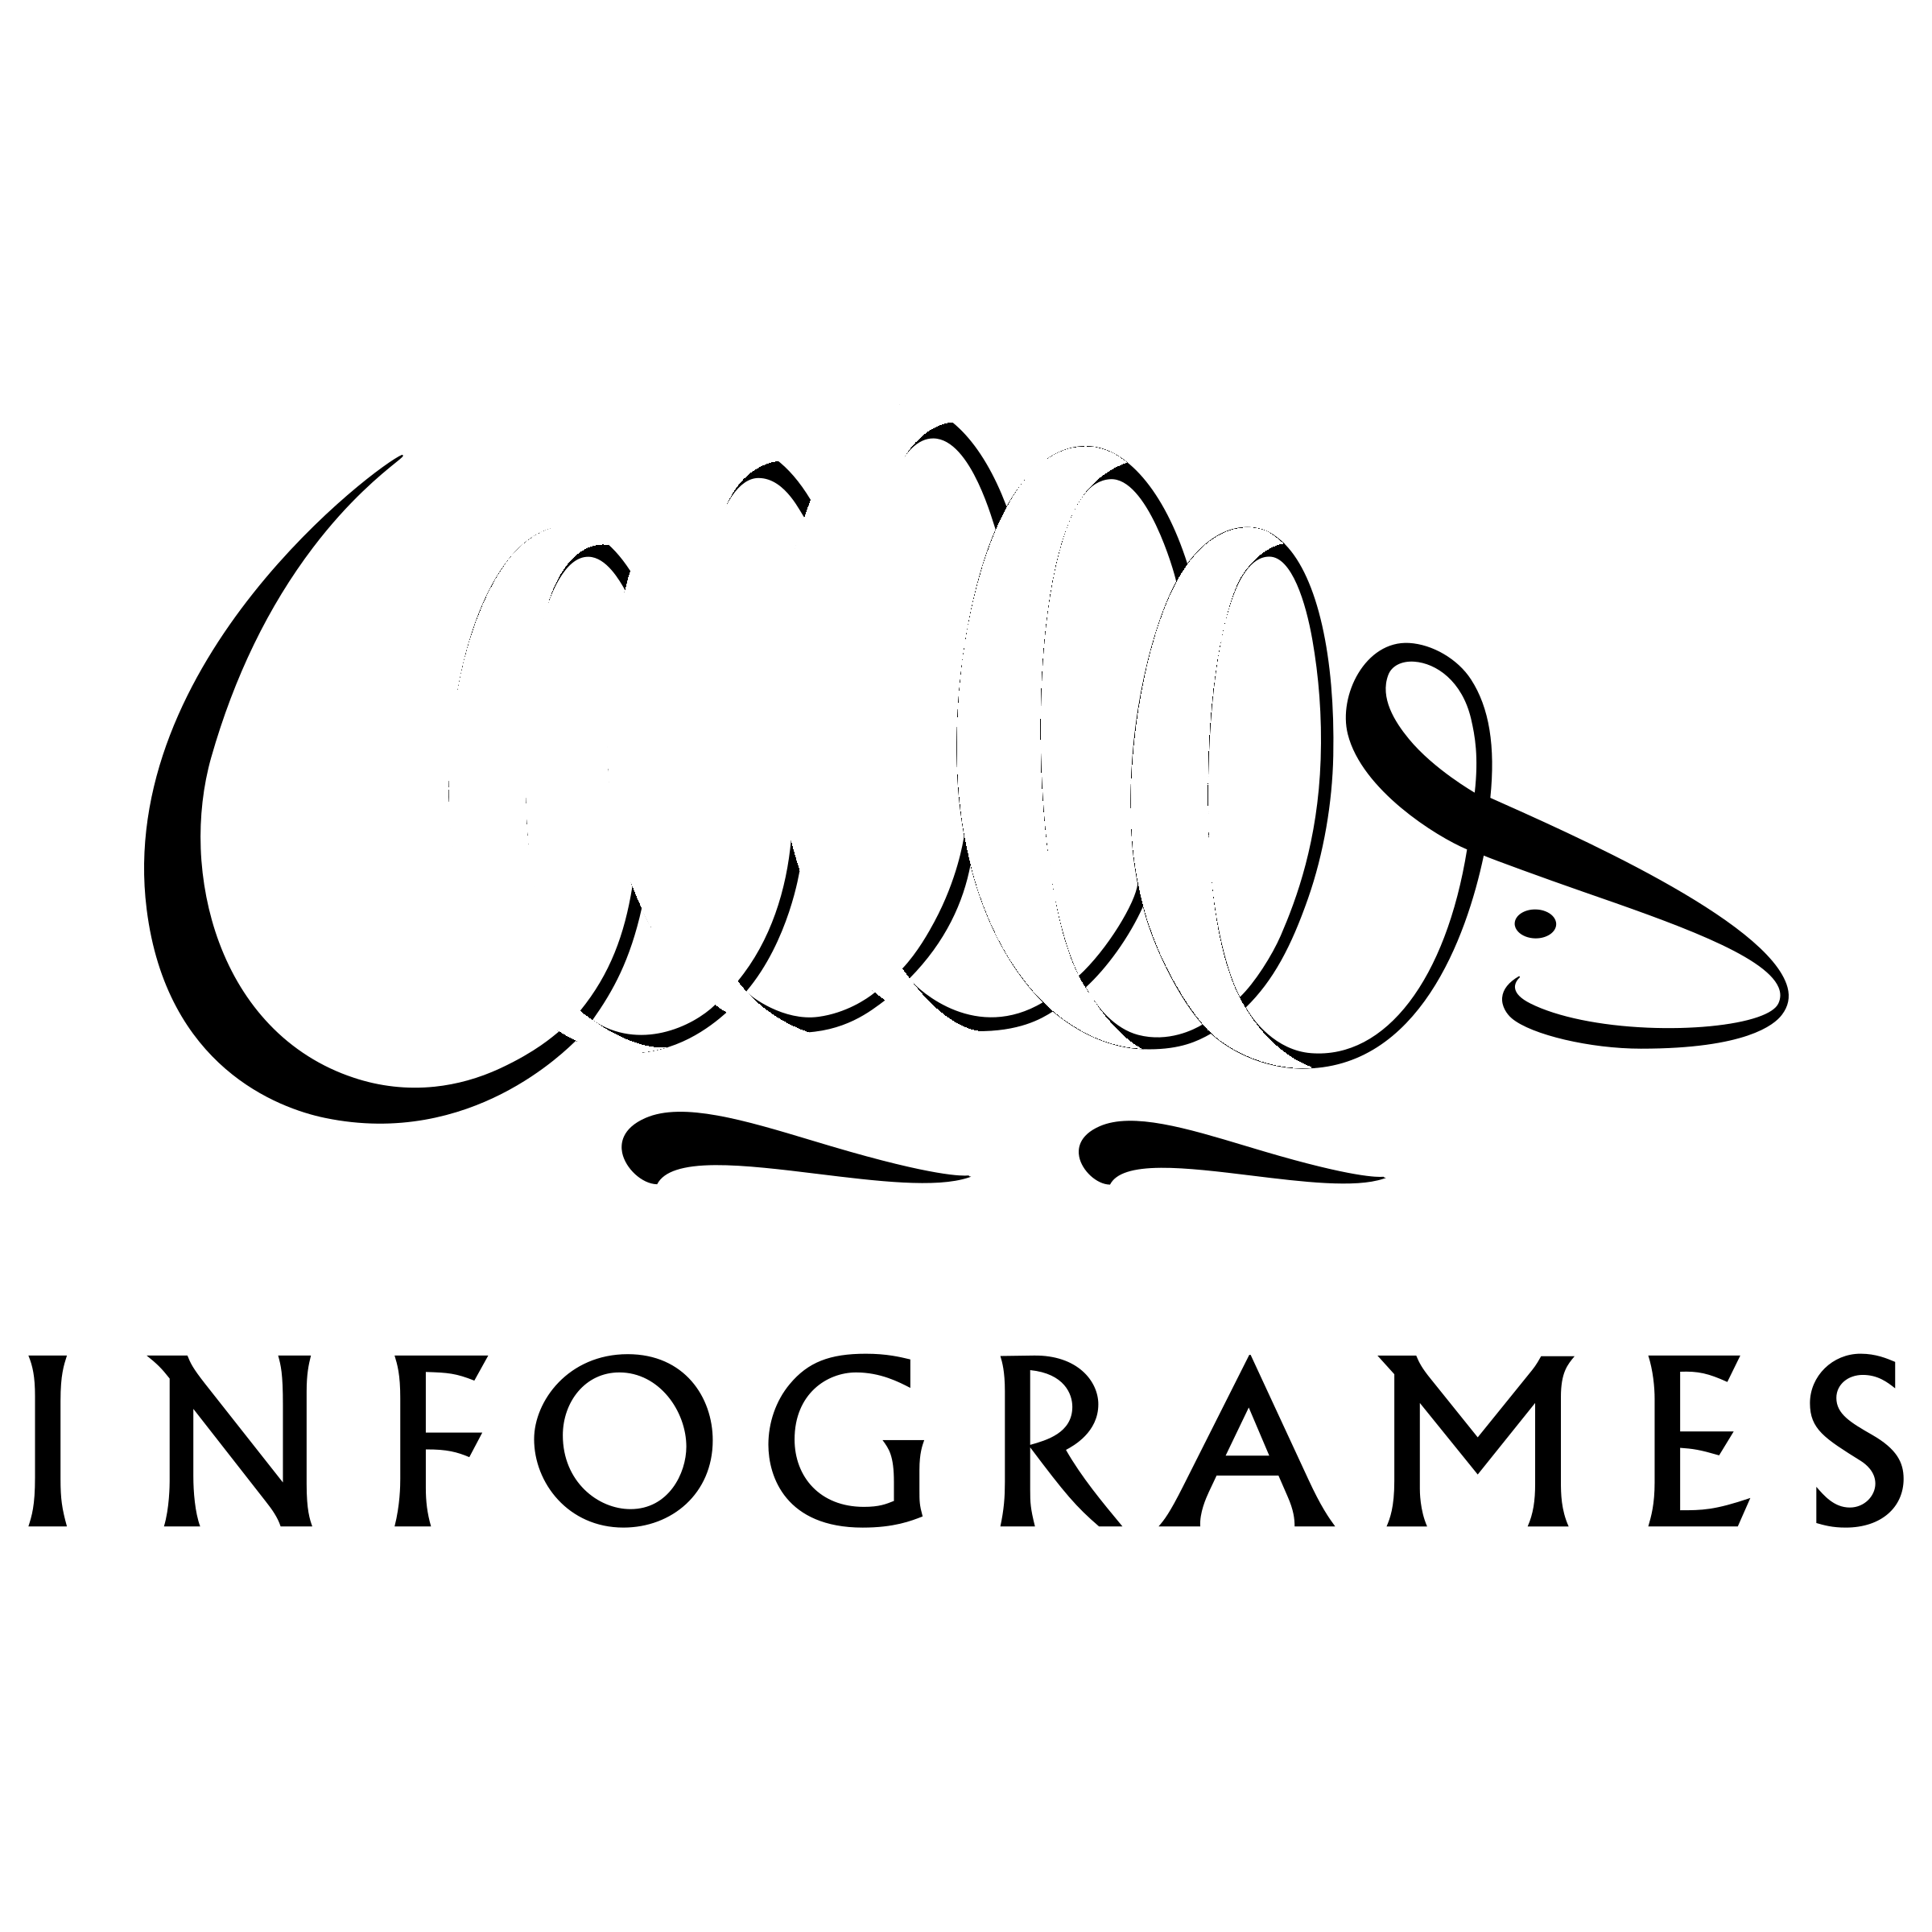 Infogrames Logo - Infogrames Logo PNG Transparent & SVG Vector - Freebie Supply